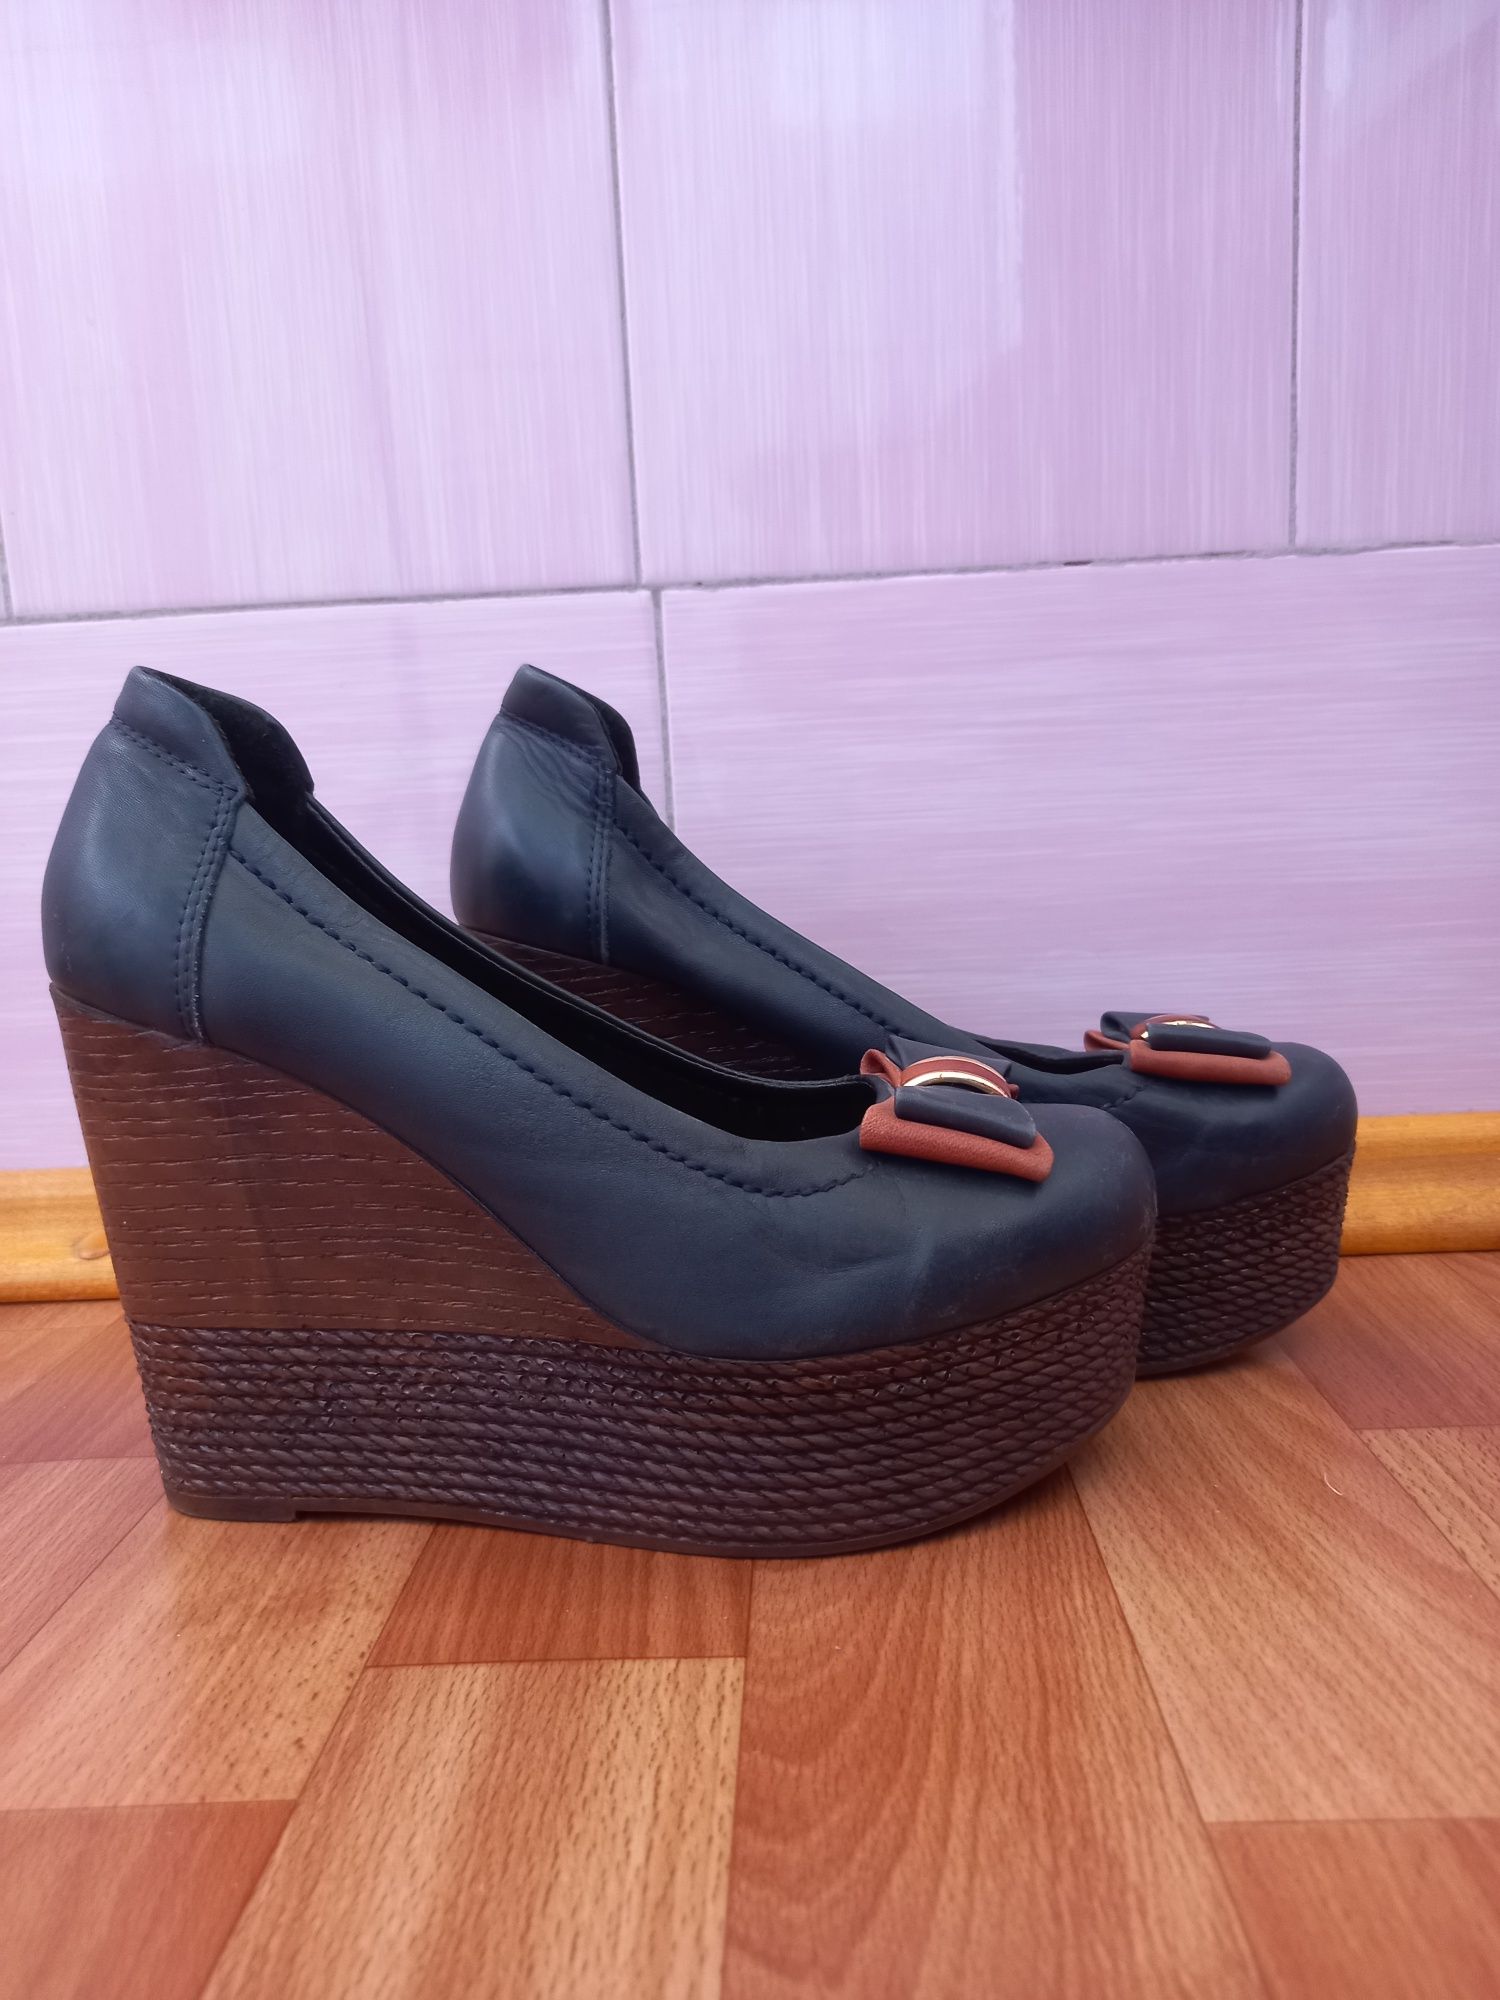 Шкіряні Жіночі туфлі виробництво Туреччина розмір 39 в ідеальному стан